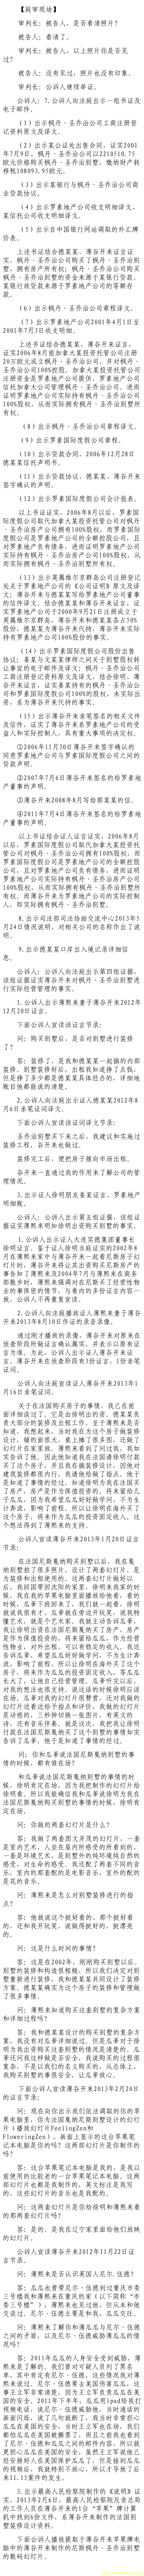 济南市中级法院官方微博公布的8月23日庭审现场记录（2）